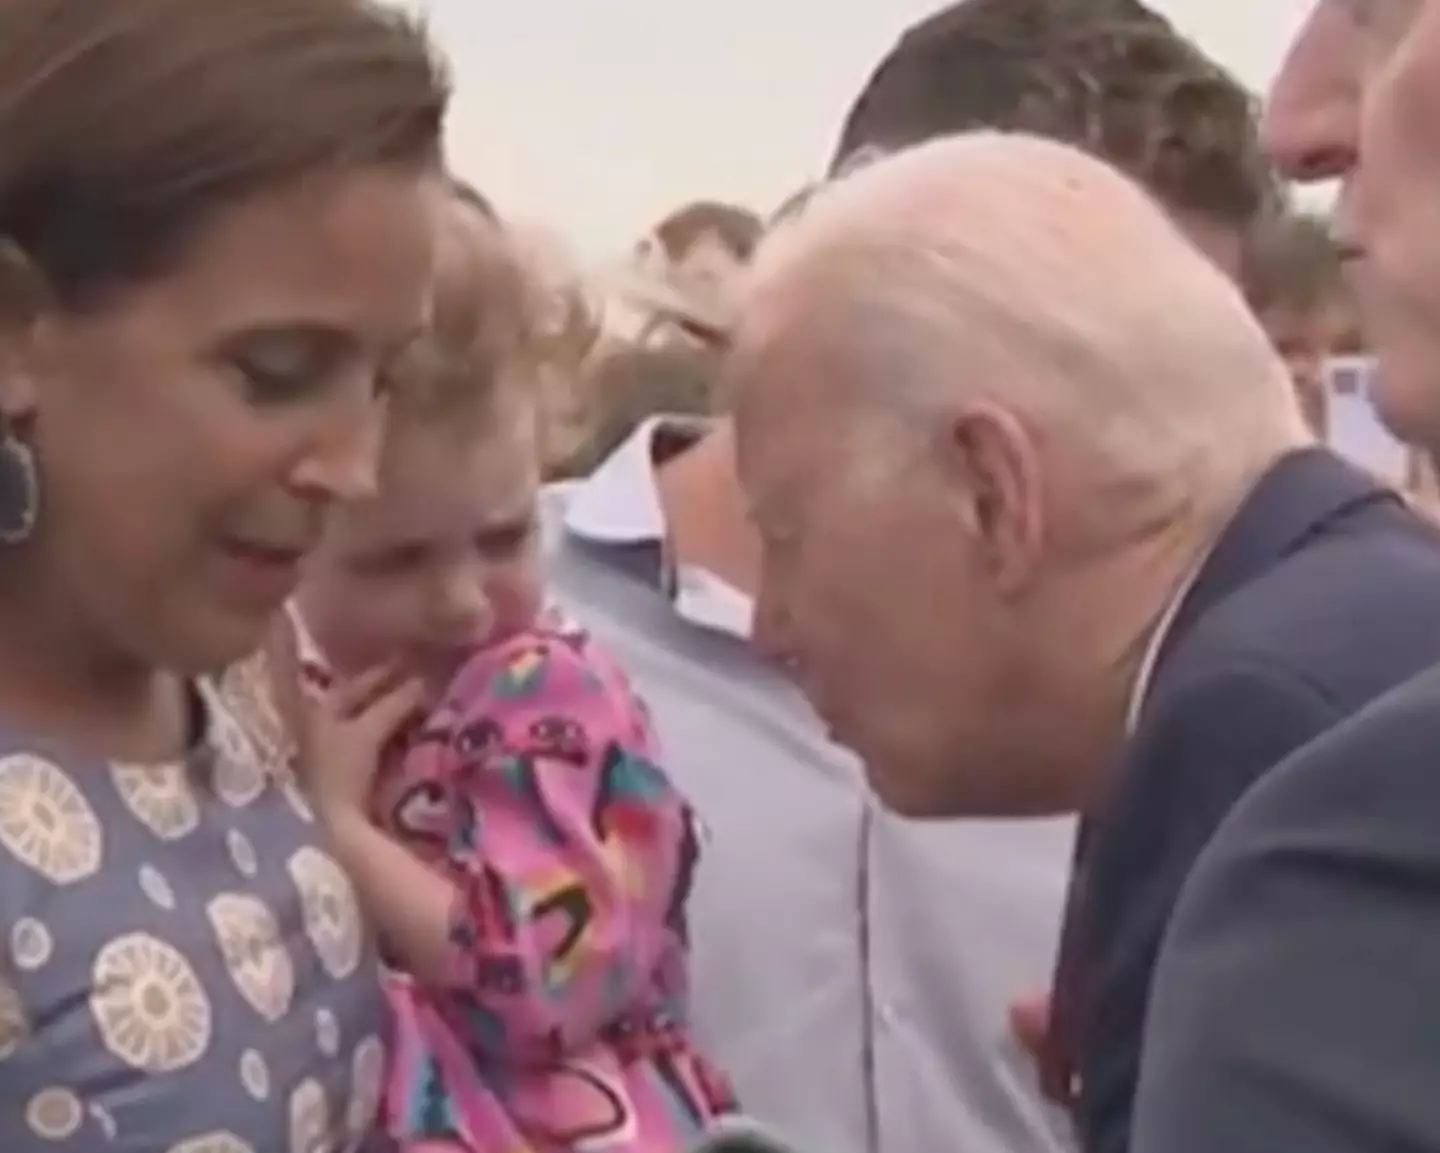 Joe Biden had a weird interaction with a young girl, critics say.